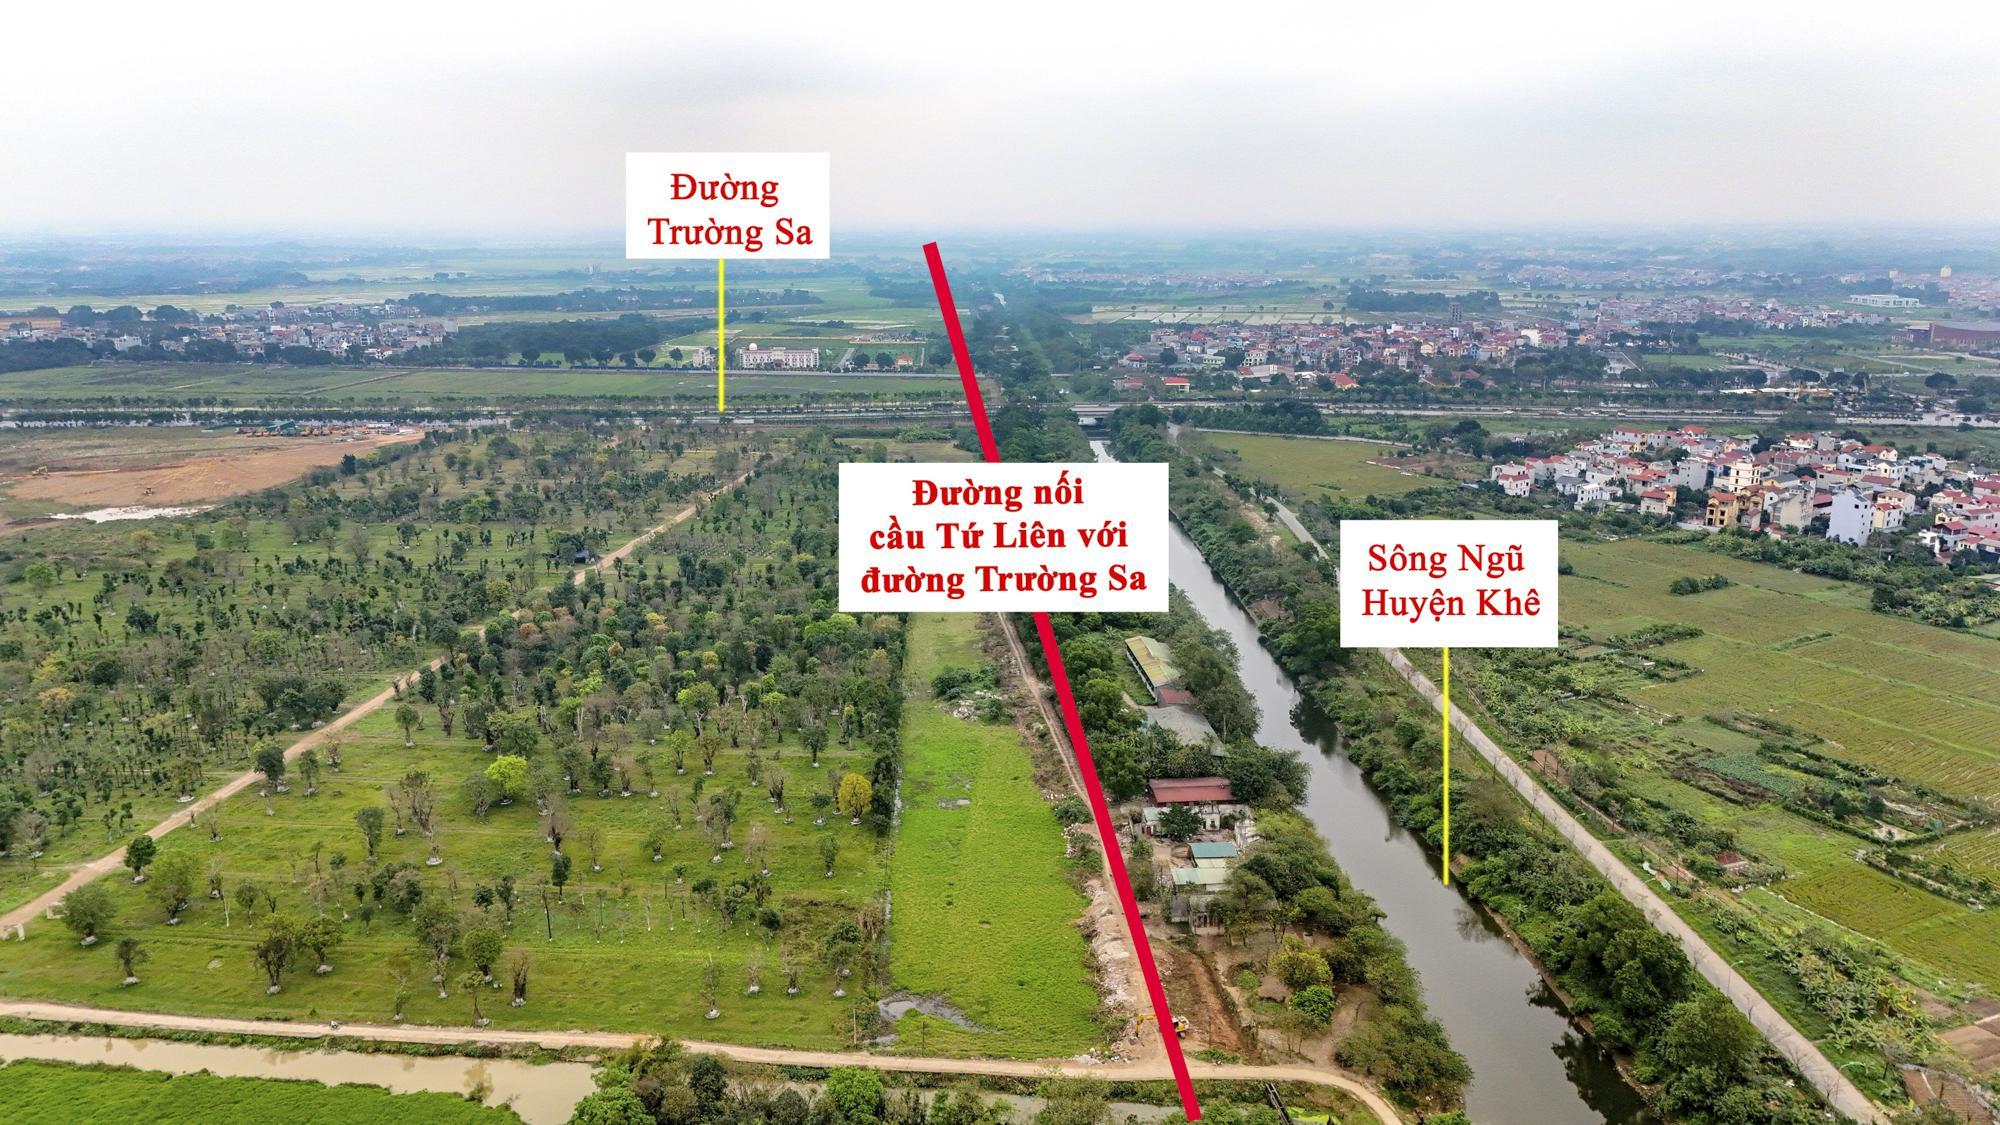 Khu vực sắp được xây cầu 20.000 tỷ, vượt qua 2 con sông lớn, đi qua đại dự án của Vinhomes ở Hà Nội- Ảnh 7.